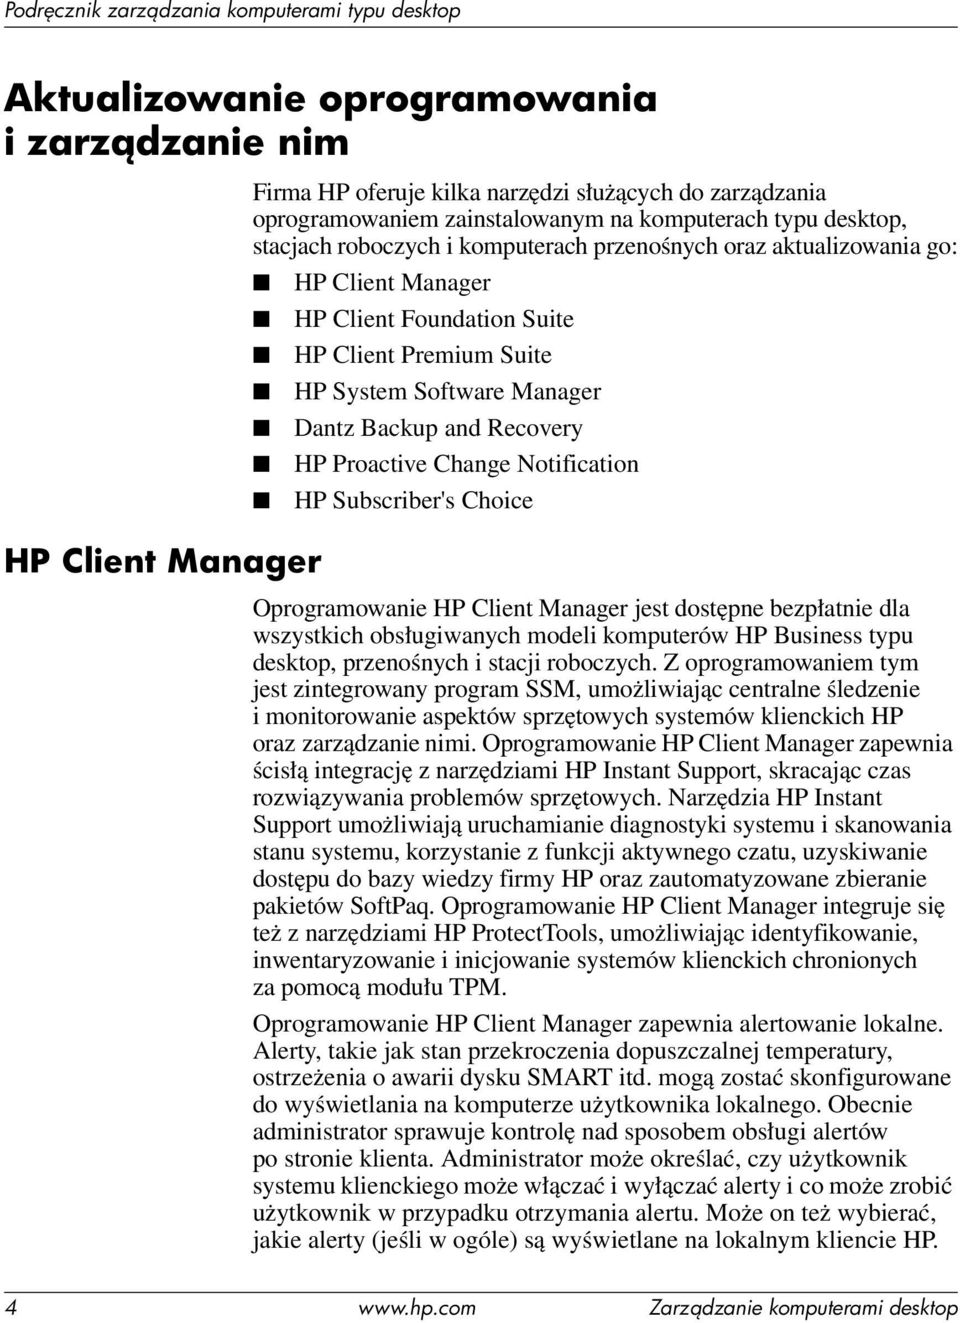 Change Notification HP Subscriber's Choice Oprogramowanie HP Client Manager jest dostępne bezpłatnie dla wszystkich obsługiwanych modeli komputerów HP Business typu desktop, przenośnych i stacji